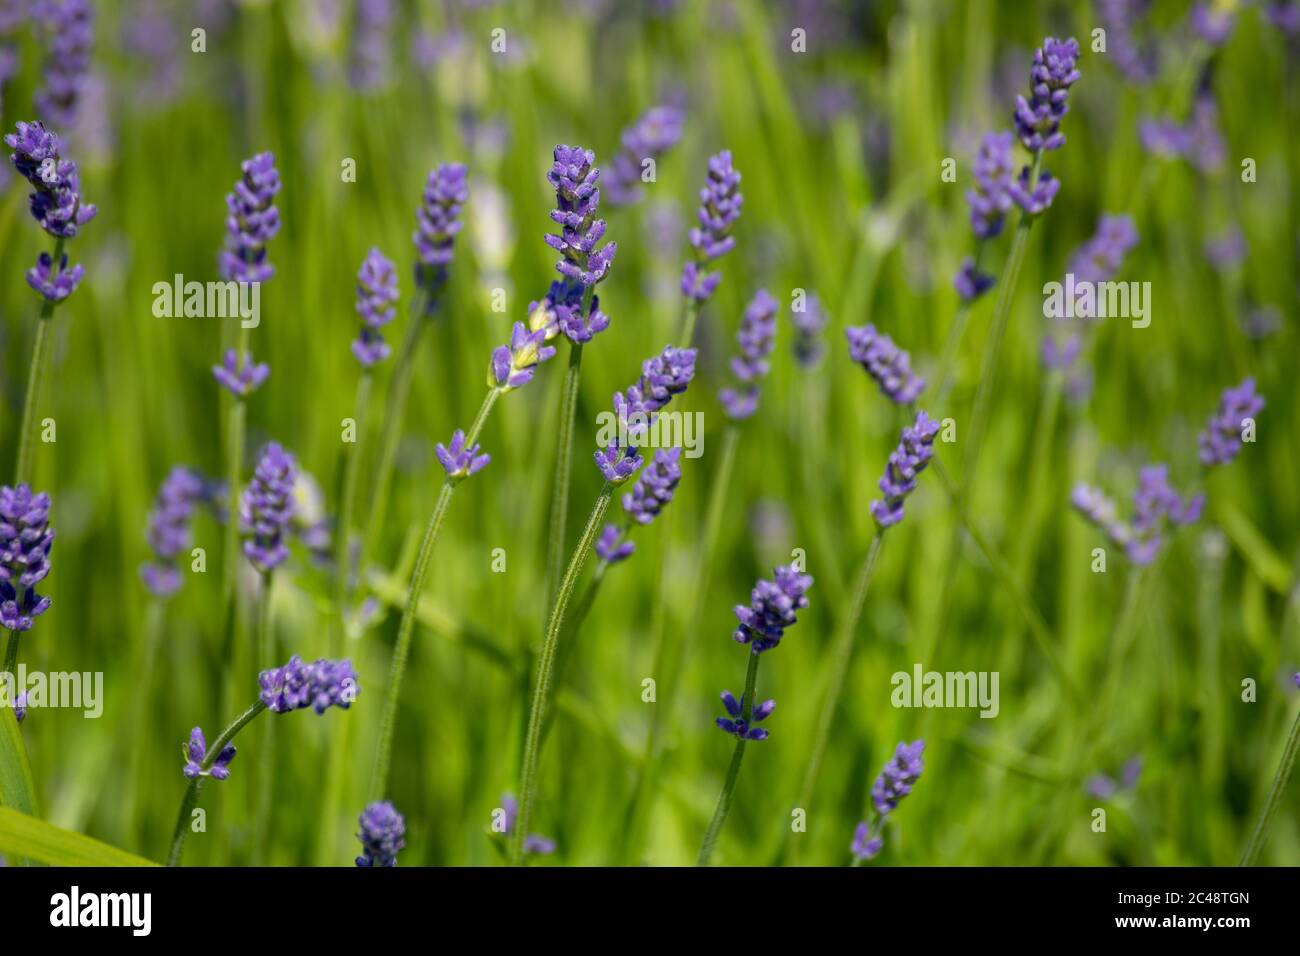 Lila Blüten von Lavandula angustifolia, Pflanze allgemein bekannt als Lavendel, echte Lavendel, englischer Lavendel, Garten Lavendel oder schmal-blättrigen Lavendel Stockfoto